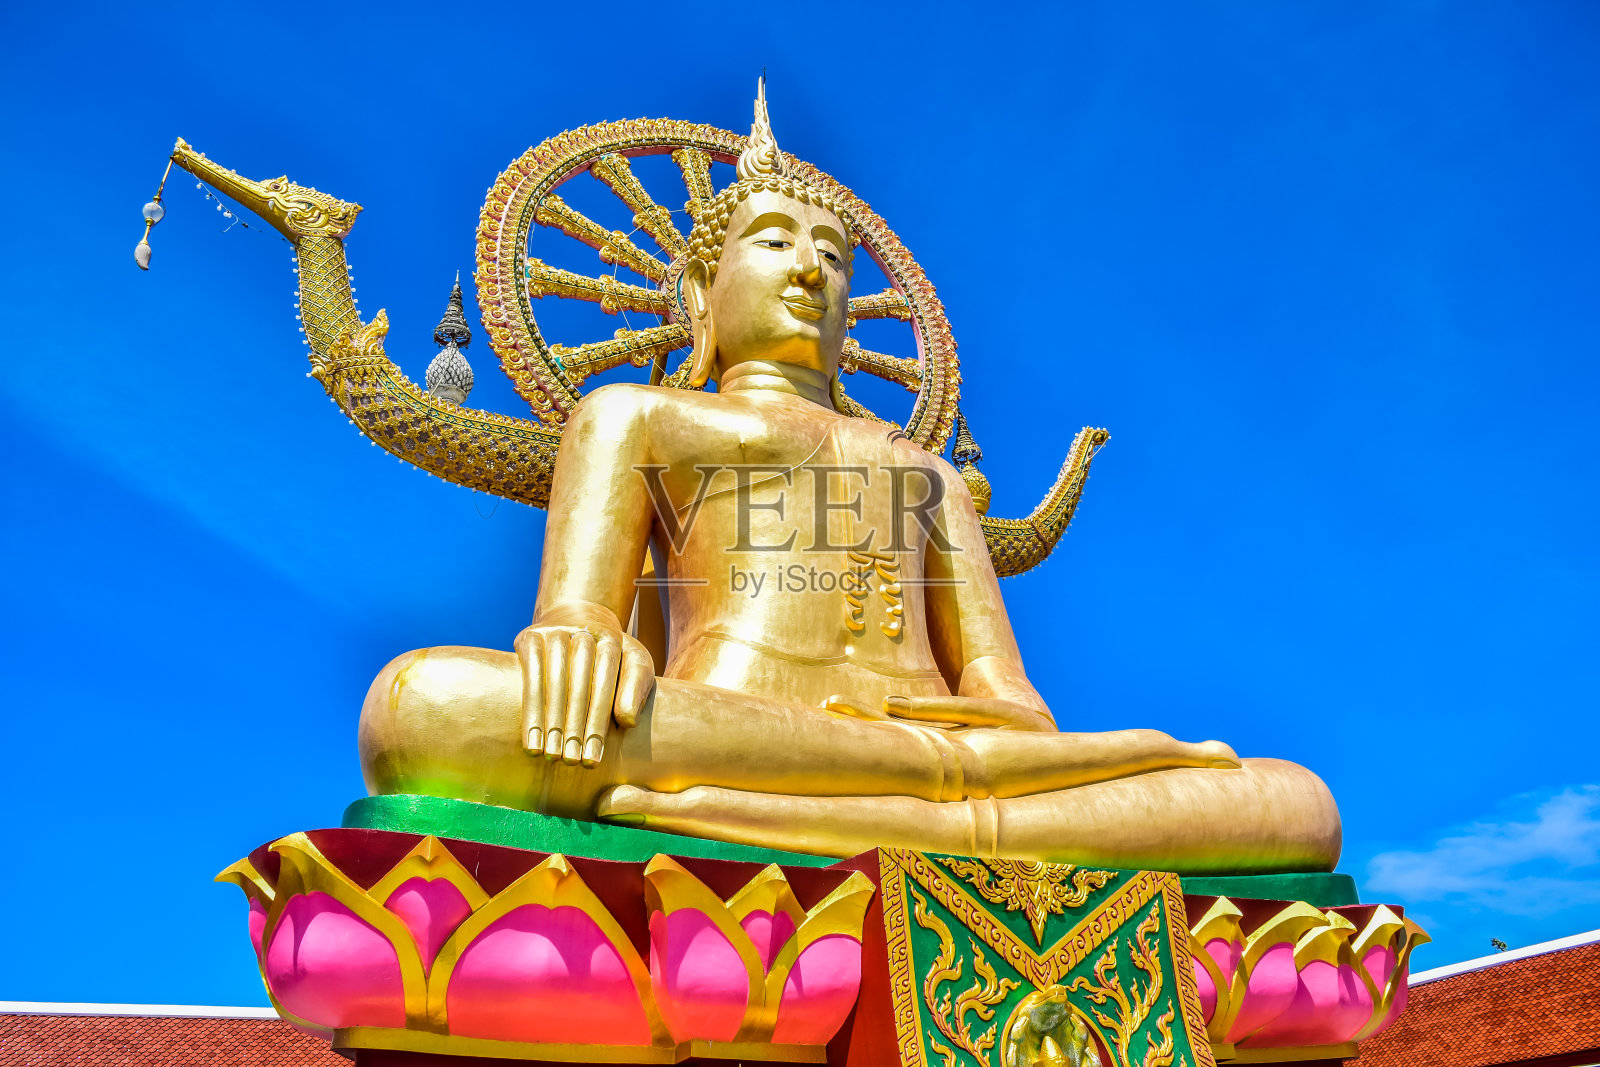 泰国苏梅岛著名旅游景点之一的雅艾寺佛寺大佛雕像照片摄影图片